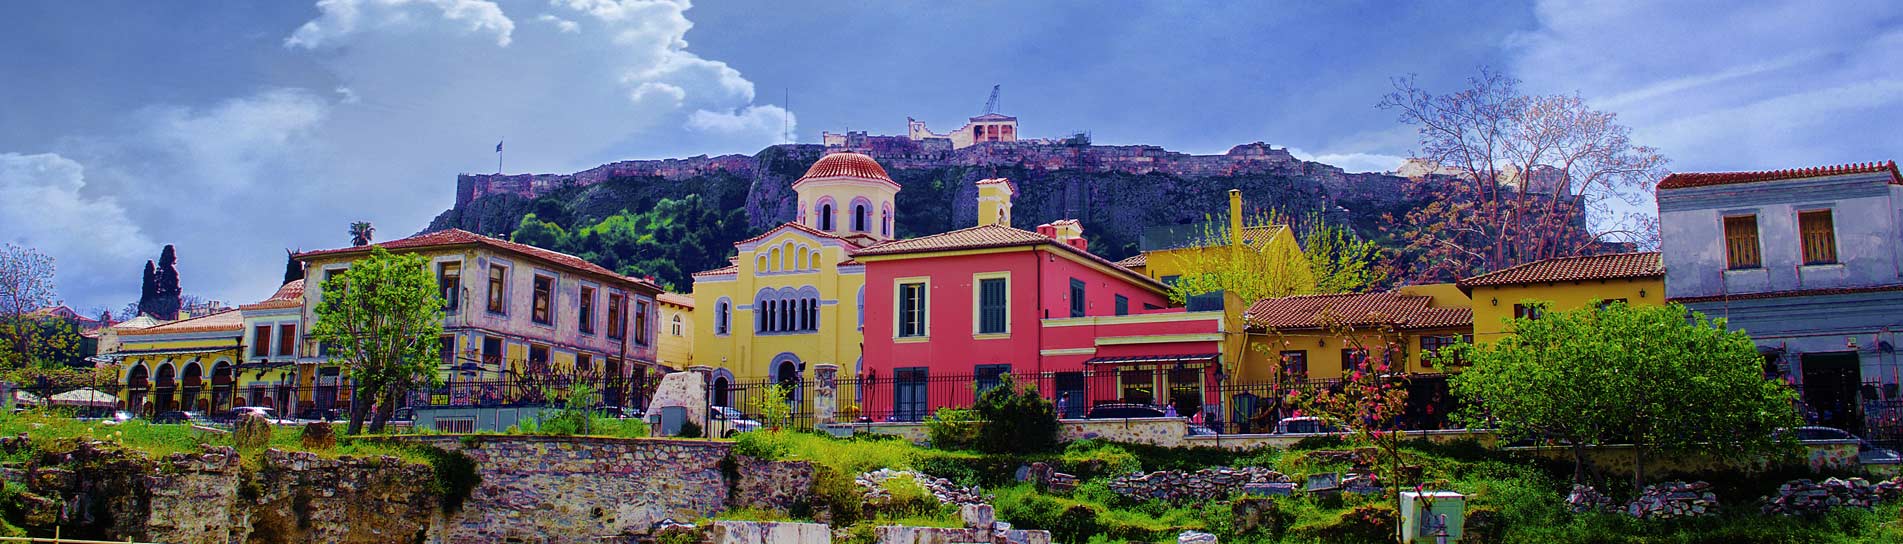 יאסו אתונה: 10 המלצות לחופשה בבירת יוון